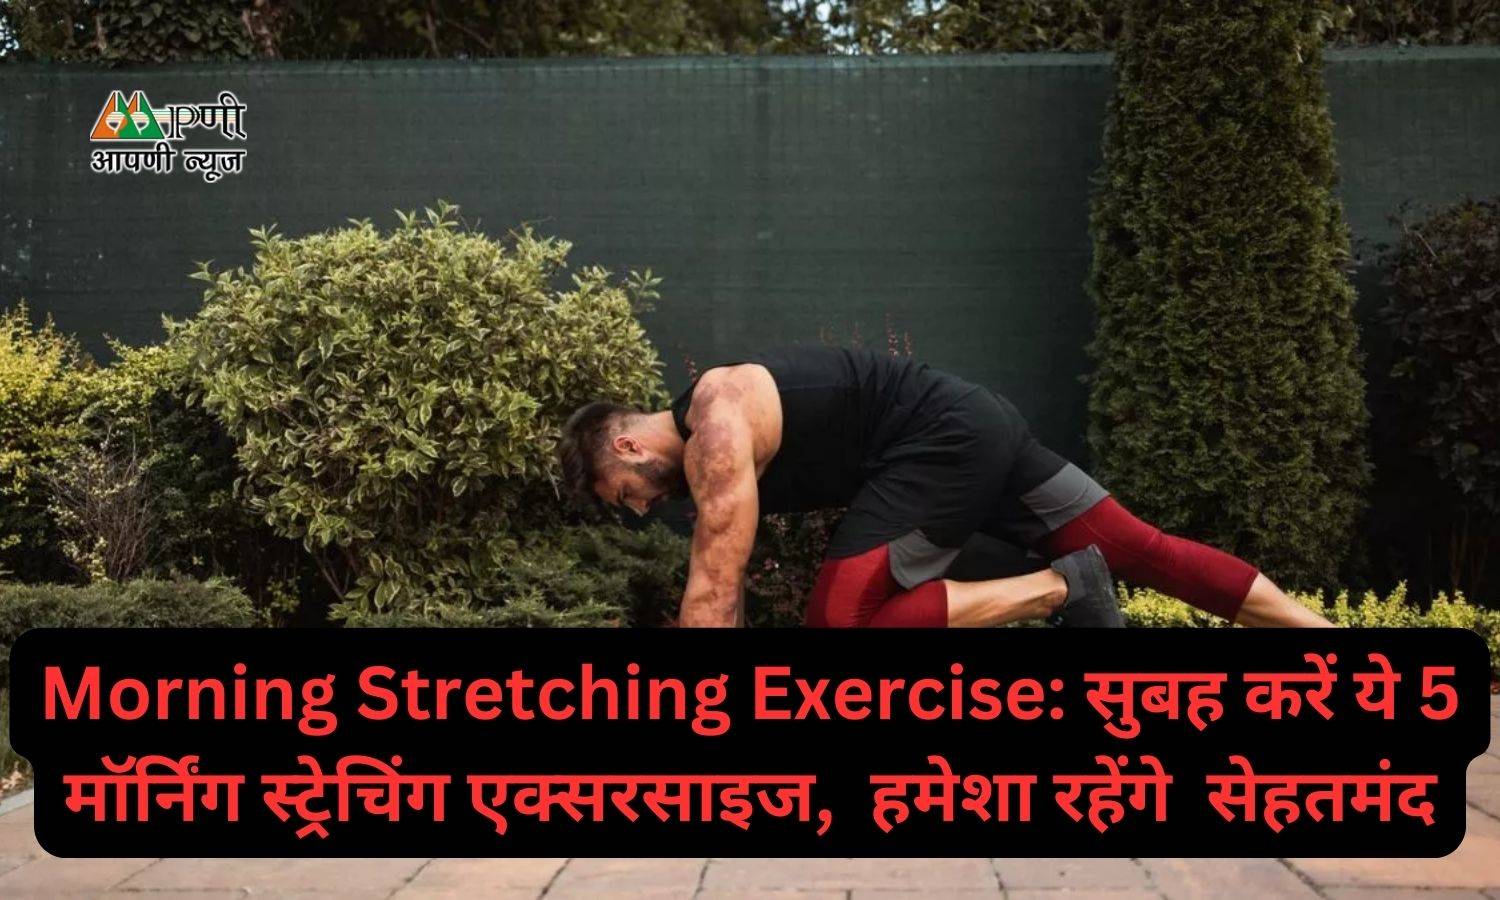 Morning Stretching Exercise: सुबह करें ये 5 मॉर्निंग स्ट्रेचिंग एक्सरसाइज,  हमेशा रहेंगे  सेहतमंद